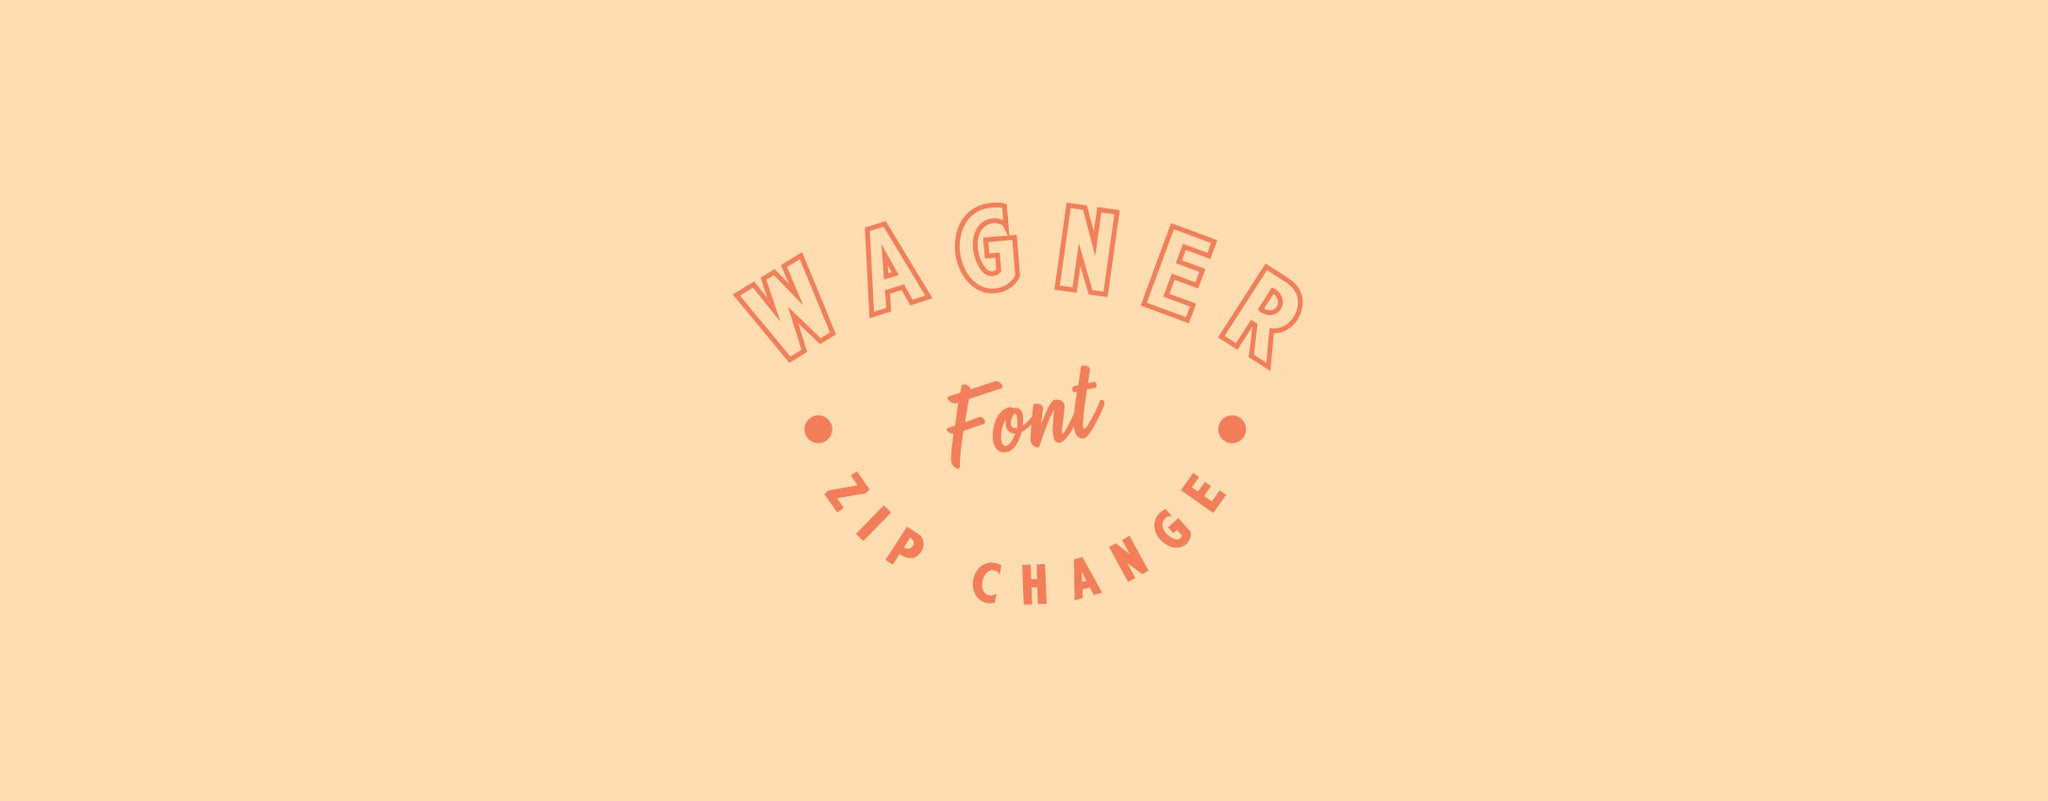 Wagner Zip Change